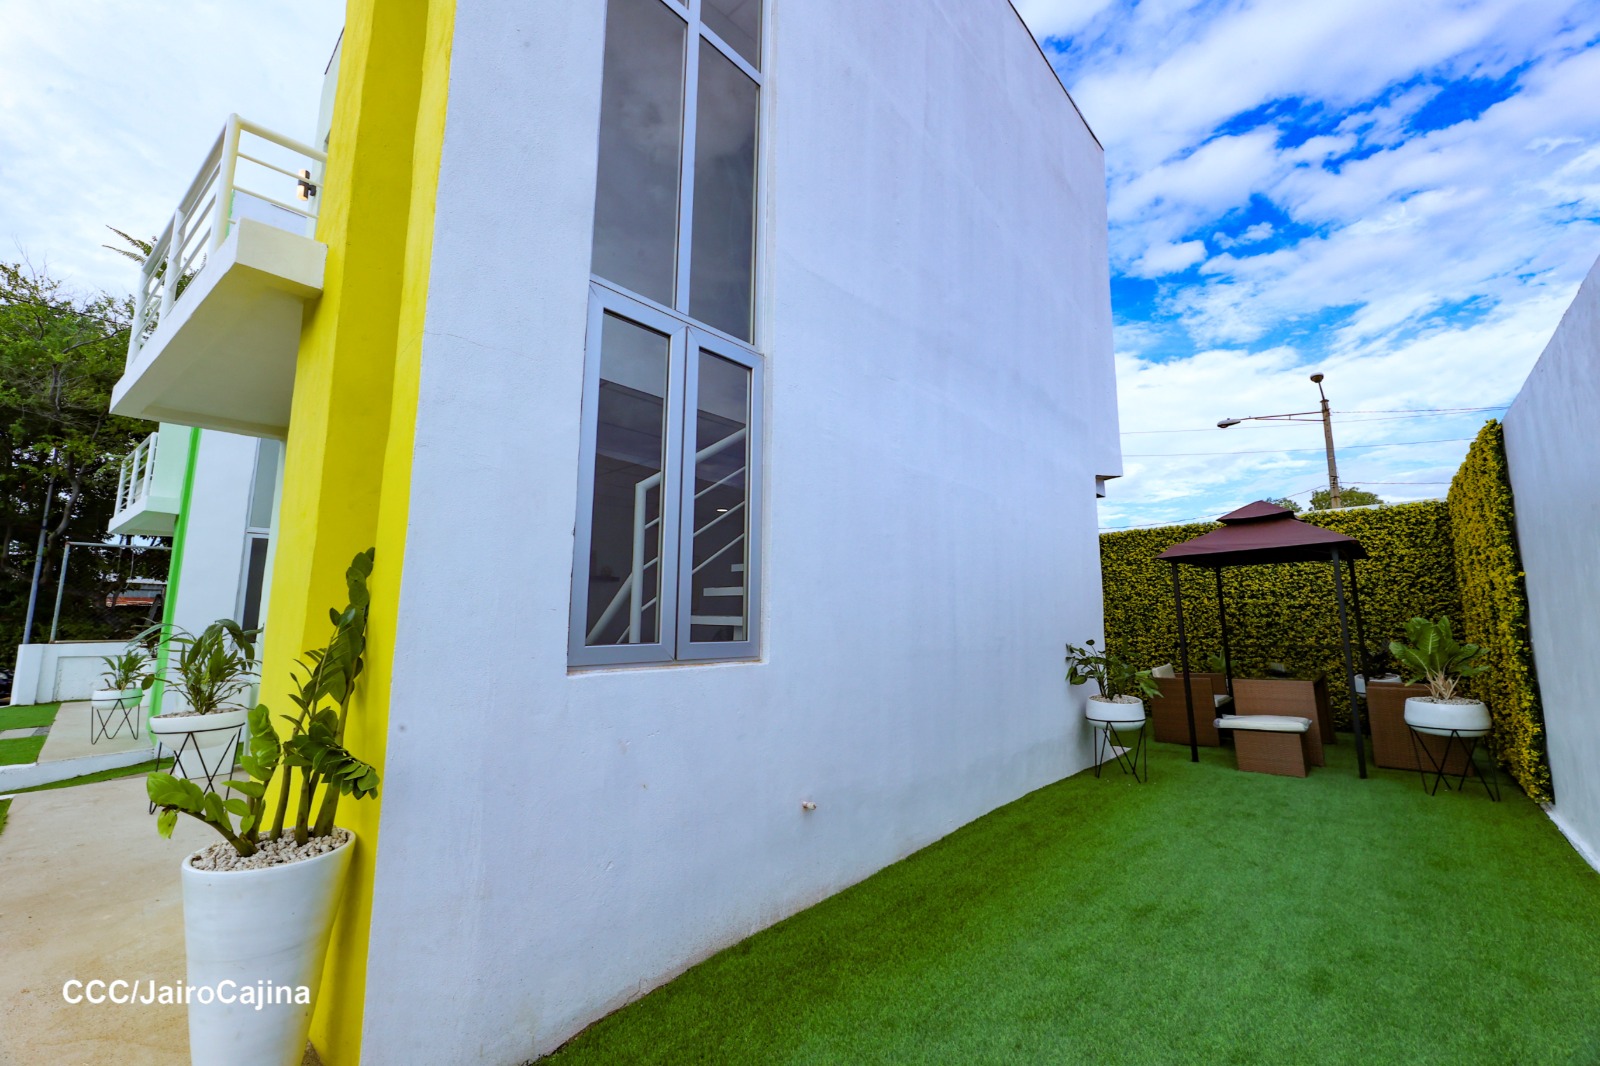 Apartamentos Roberto Clemente en Managua despierta interés y dudas